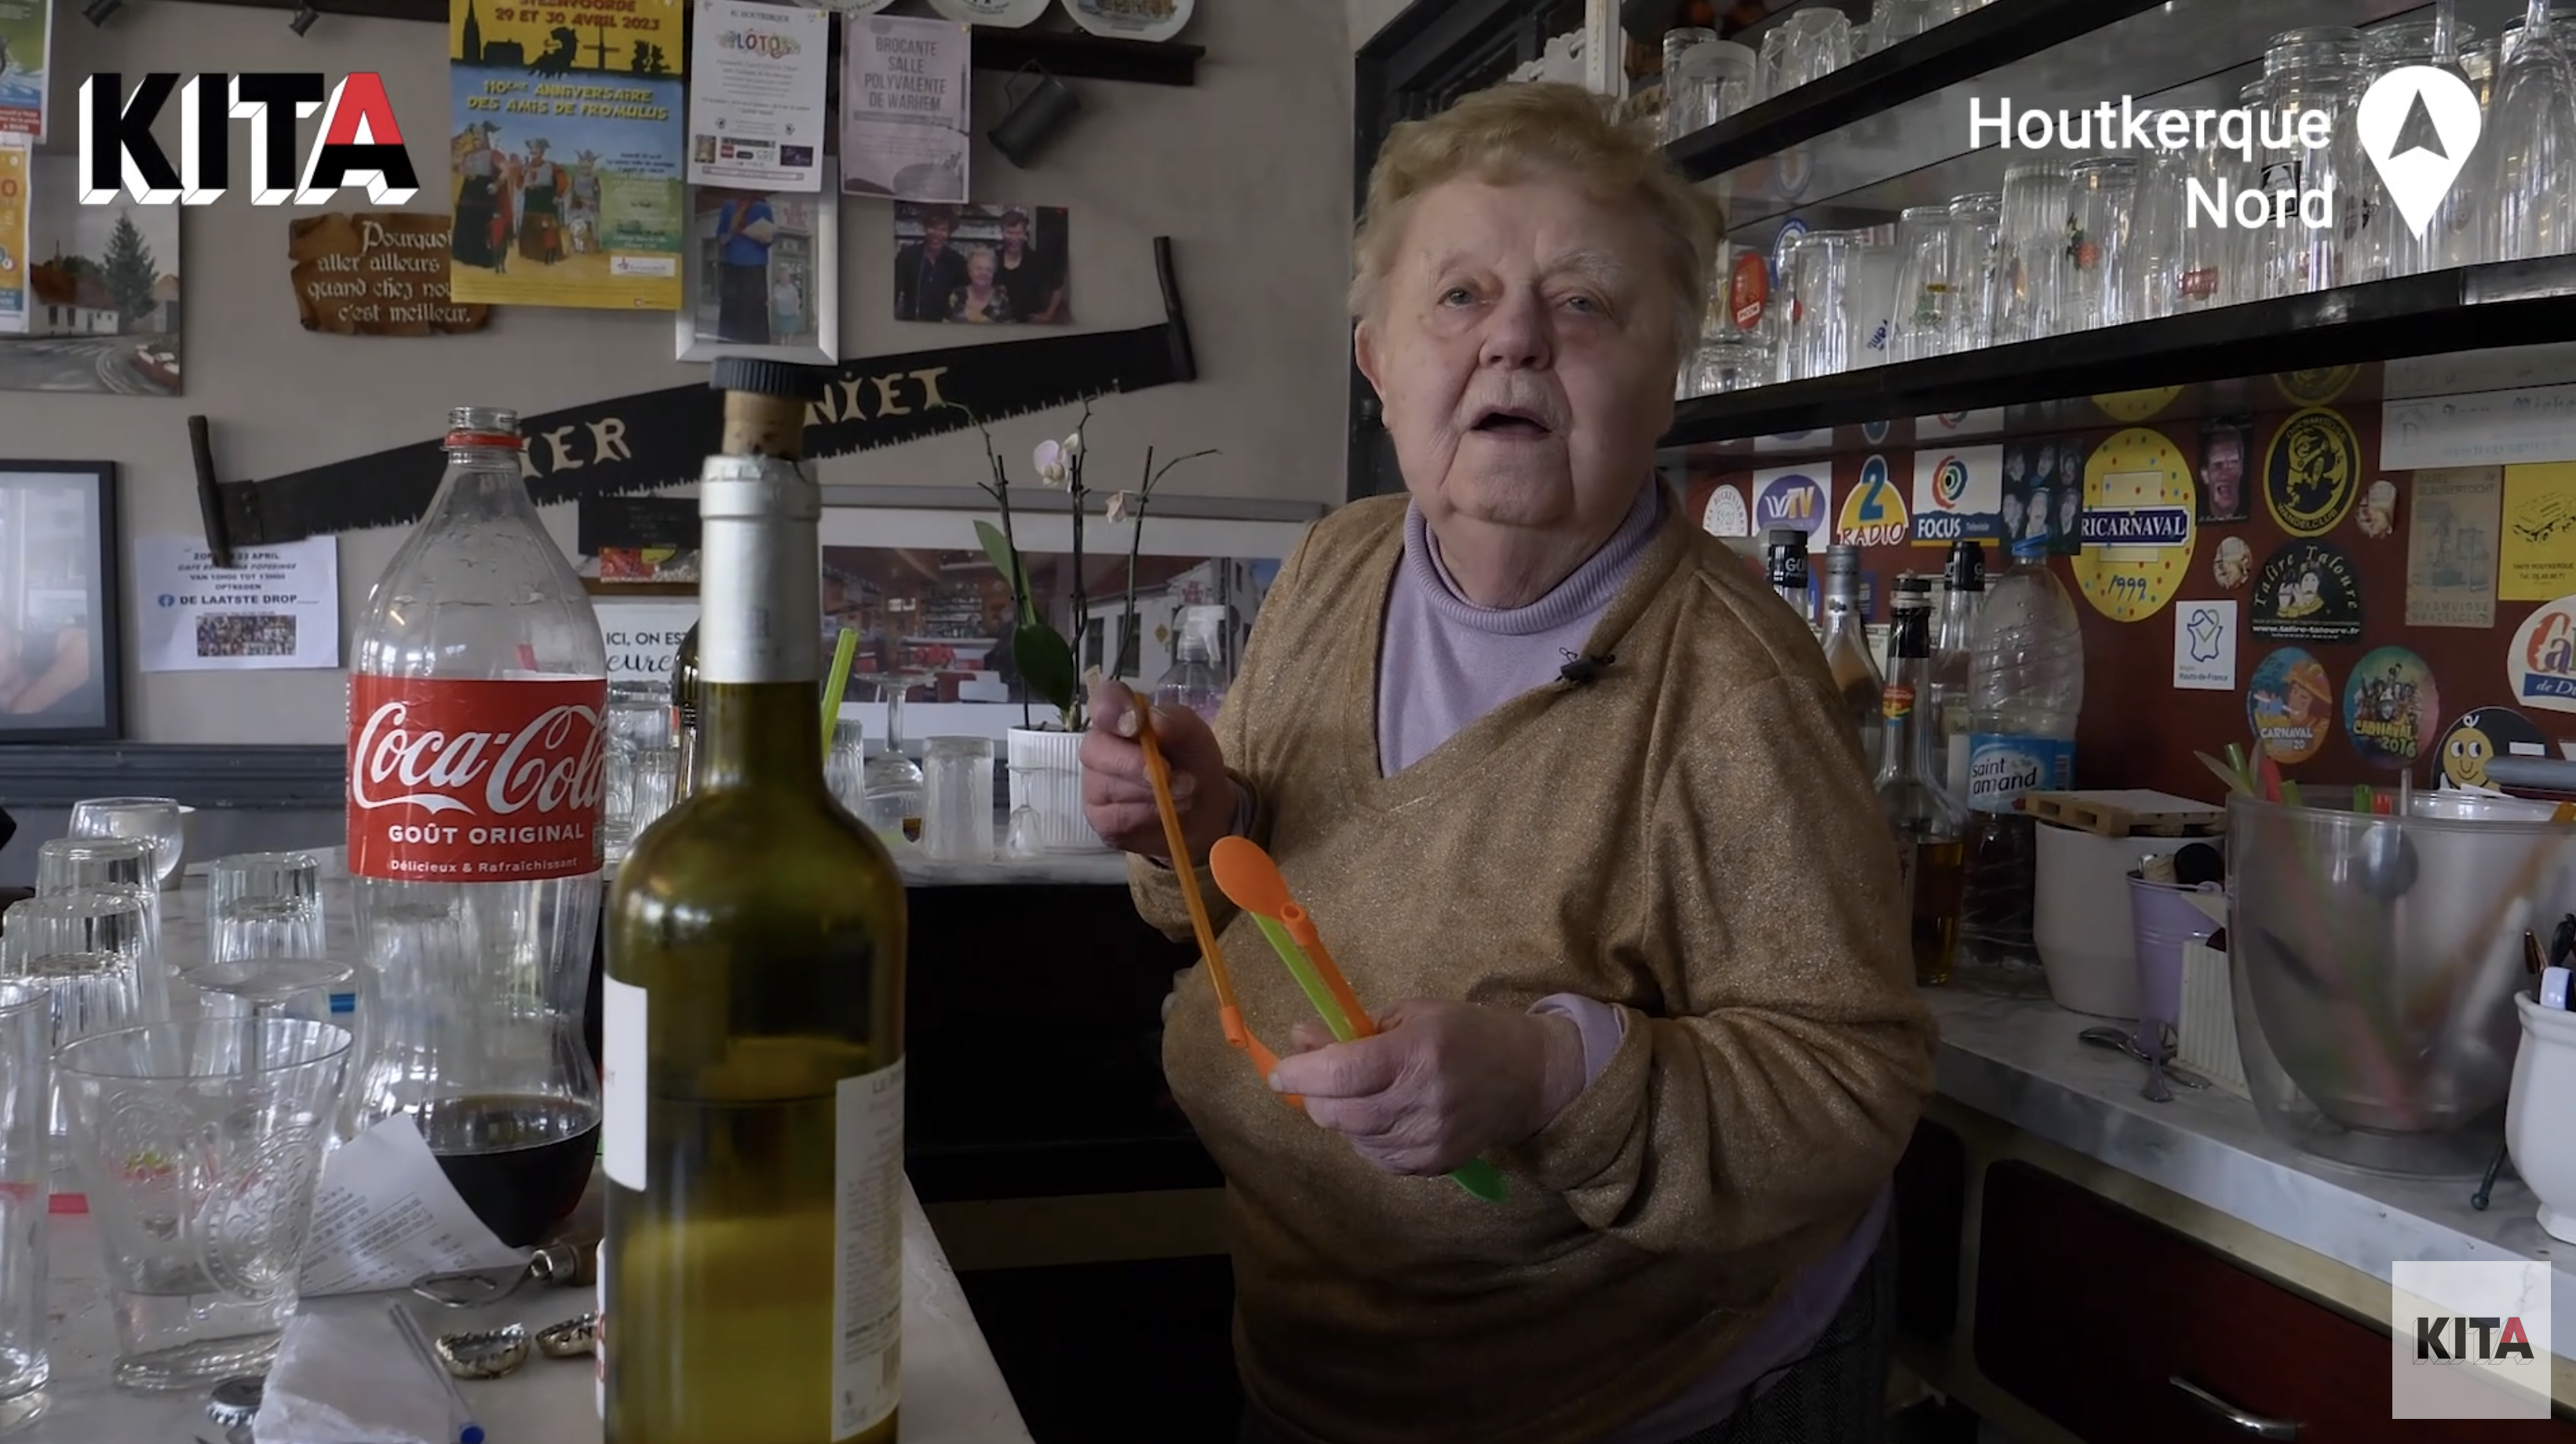 À 88 ans, Gisèle ne veut pas entendre parler de la retraite, elle (RENCONTRE)